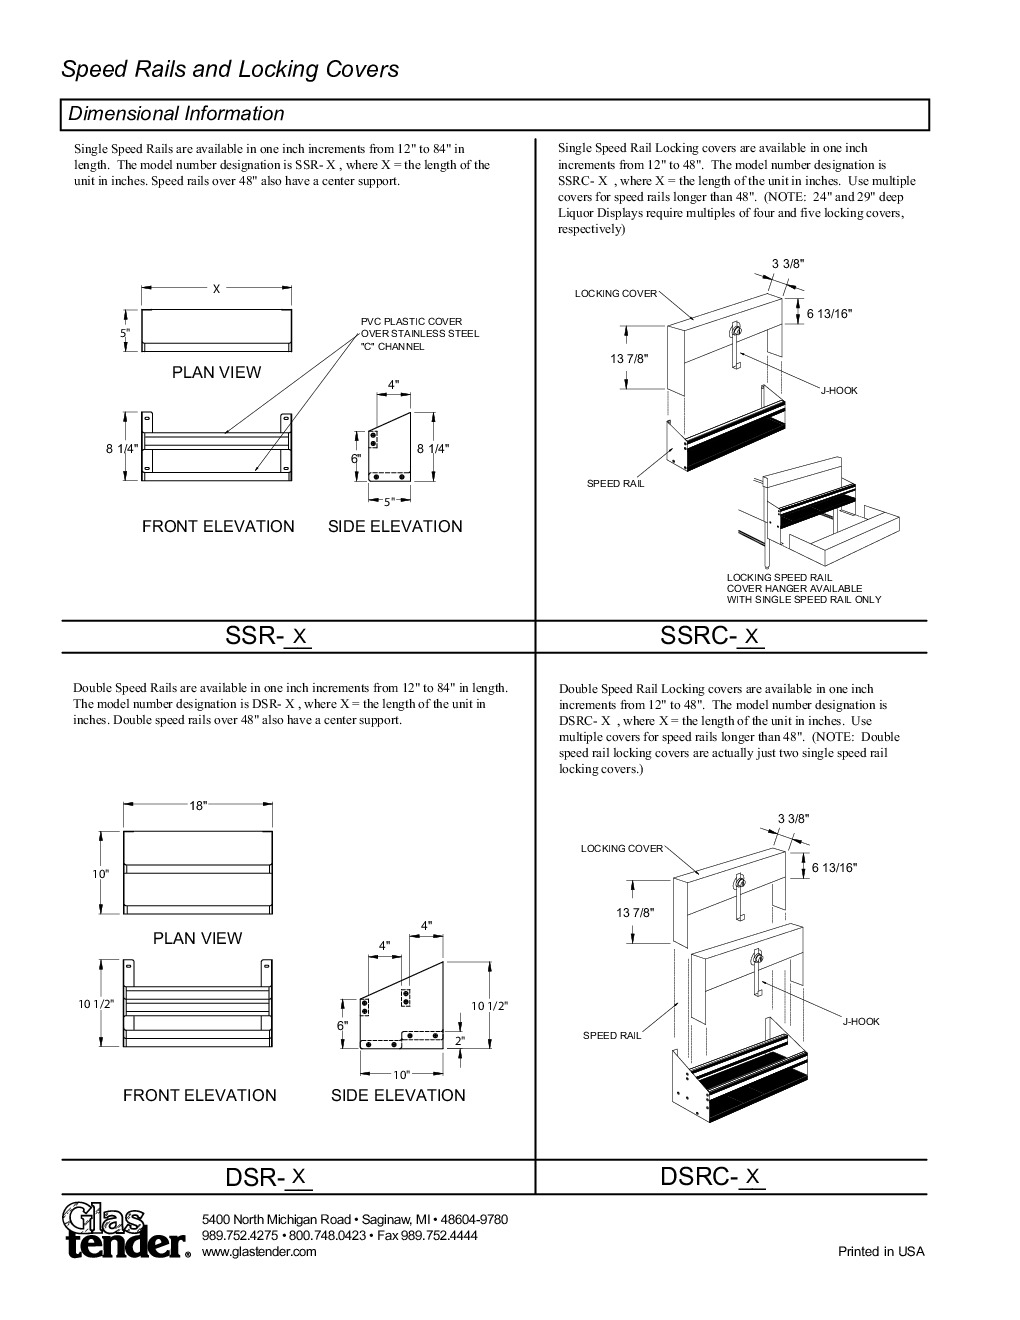 Glastender DSRC-17 Cover Speed Rail / Rack